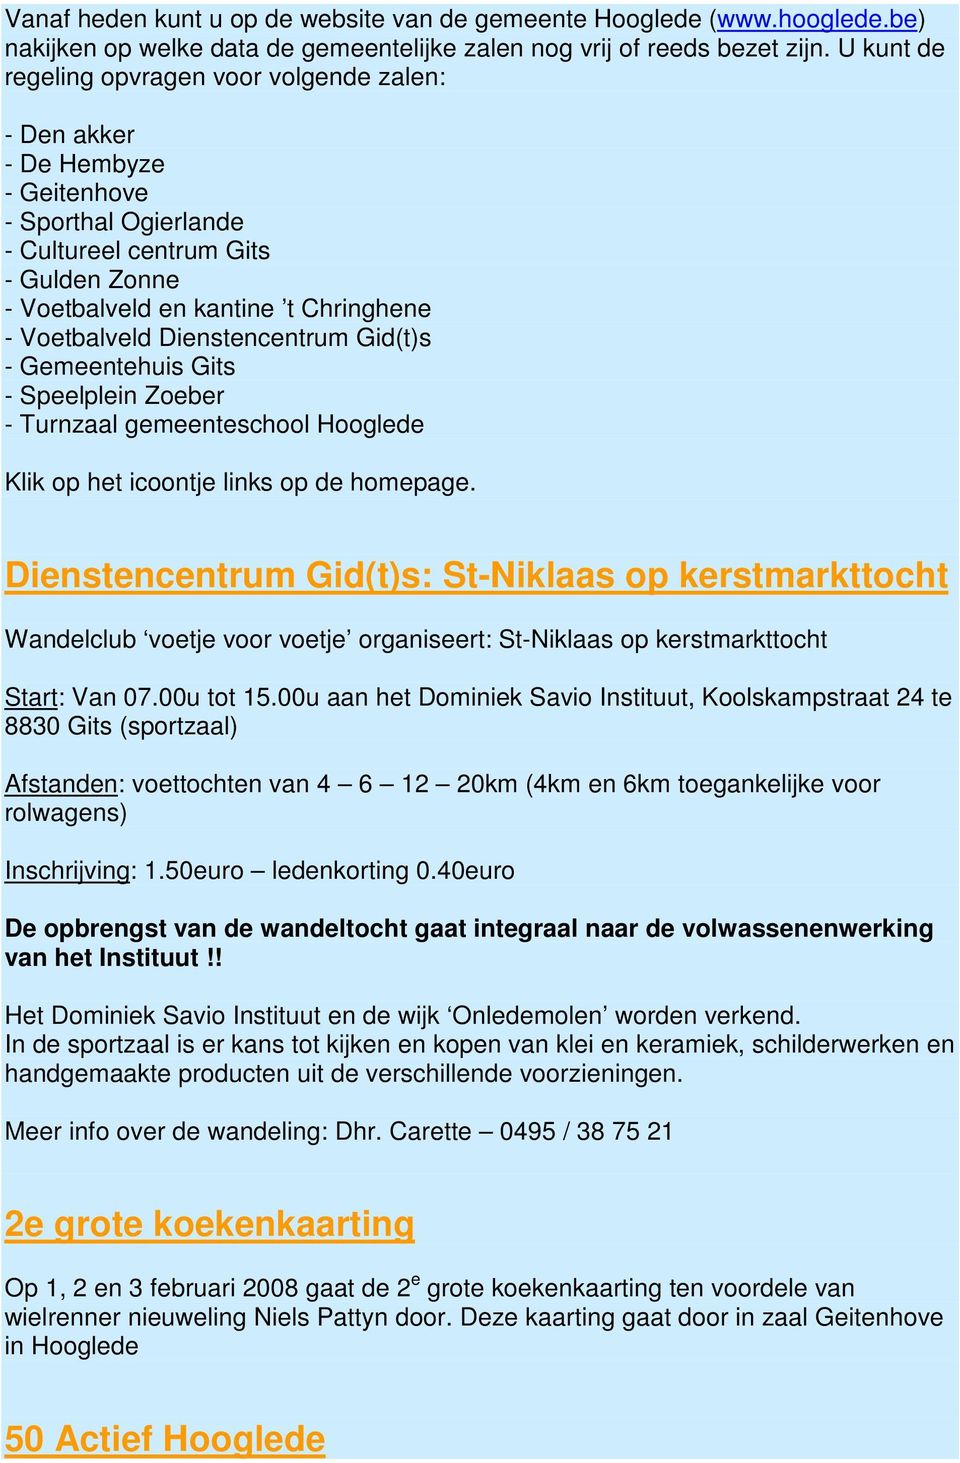 Voetbalveld Dienstencentrum Gid(t)s - Gemeentehuis Gits - Speelplein Zoeber - Turnzaal gemeenteschool Hooglede Klik op het icoontje links op de homepage.